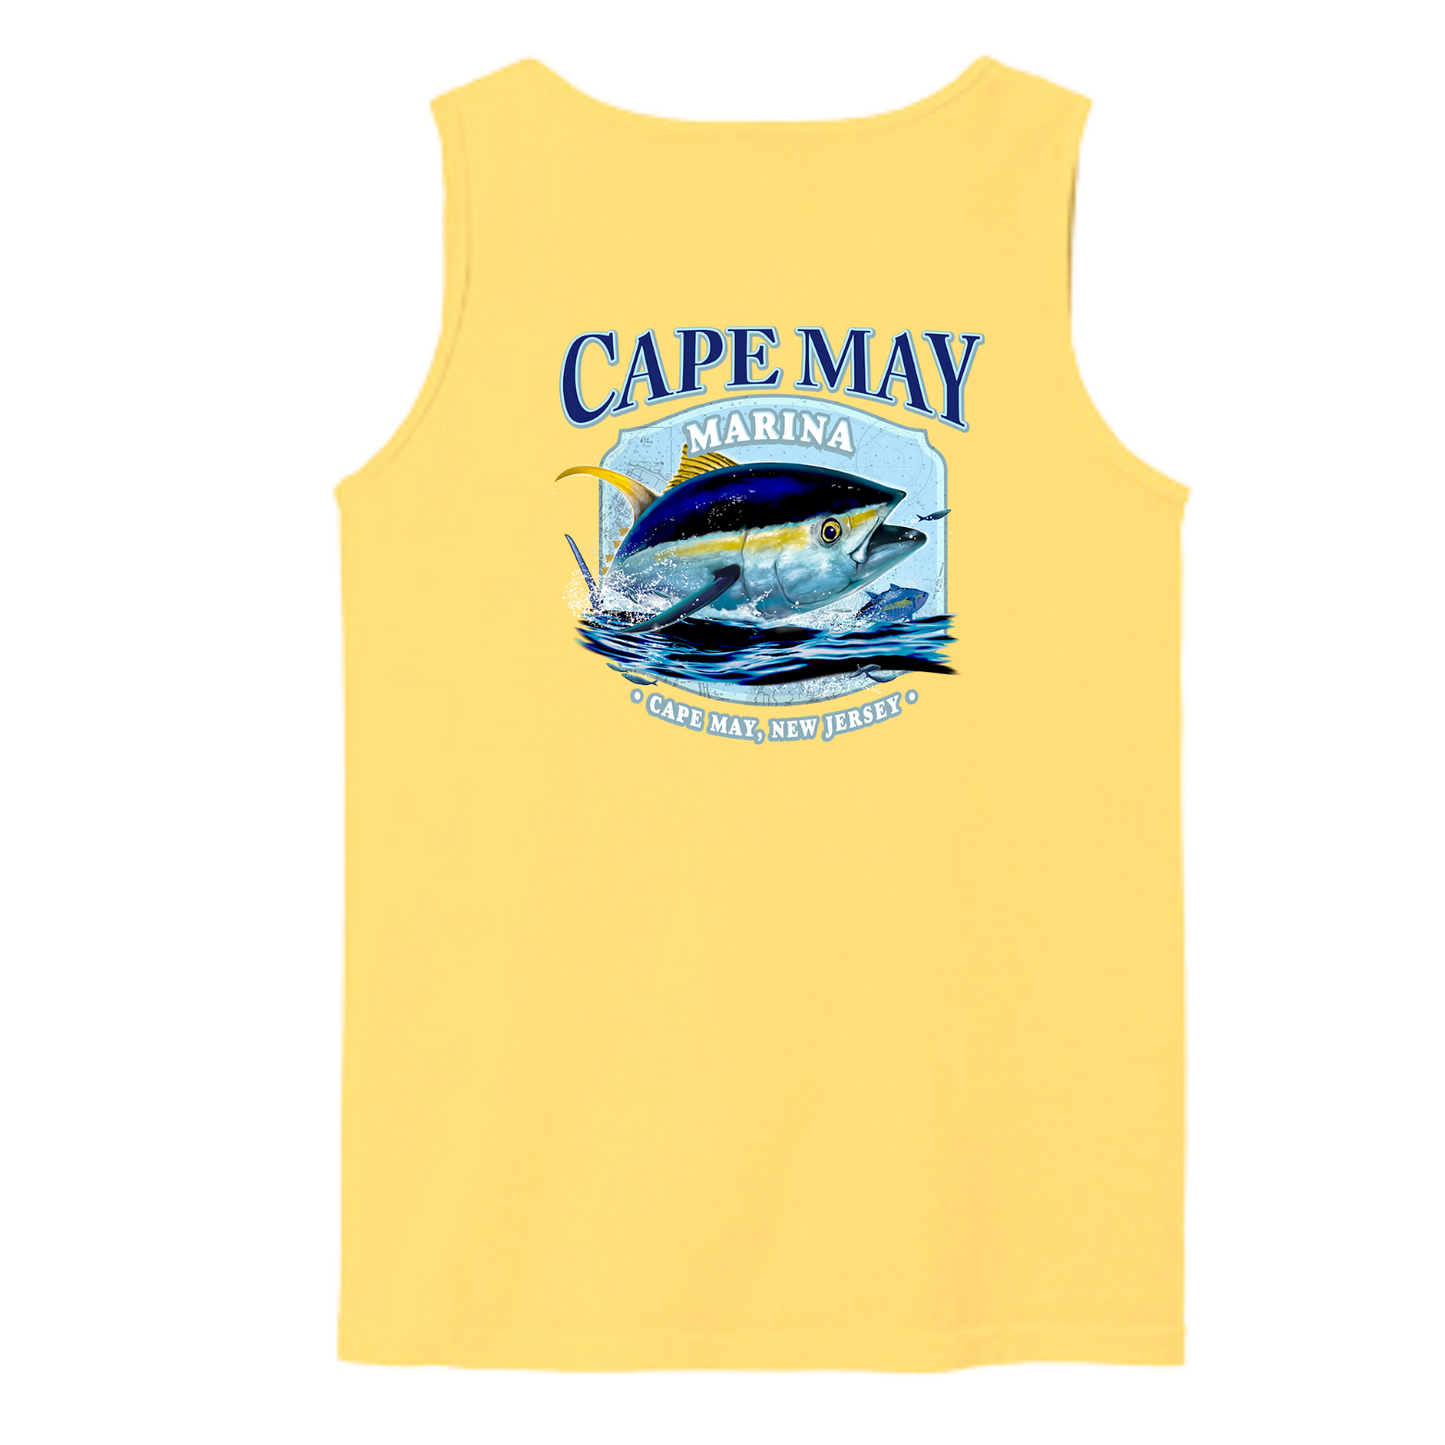 Cape May Marina - Tuna Tank